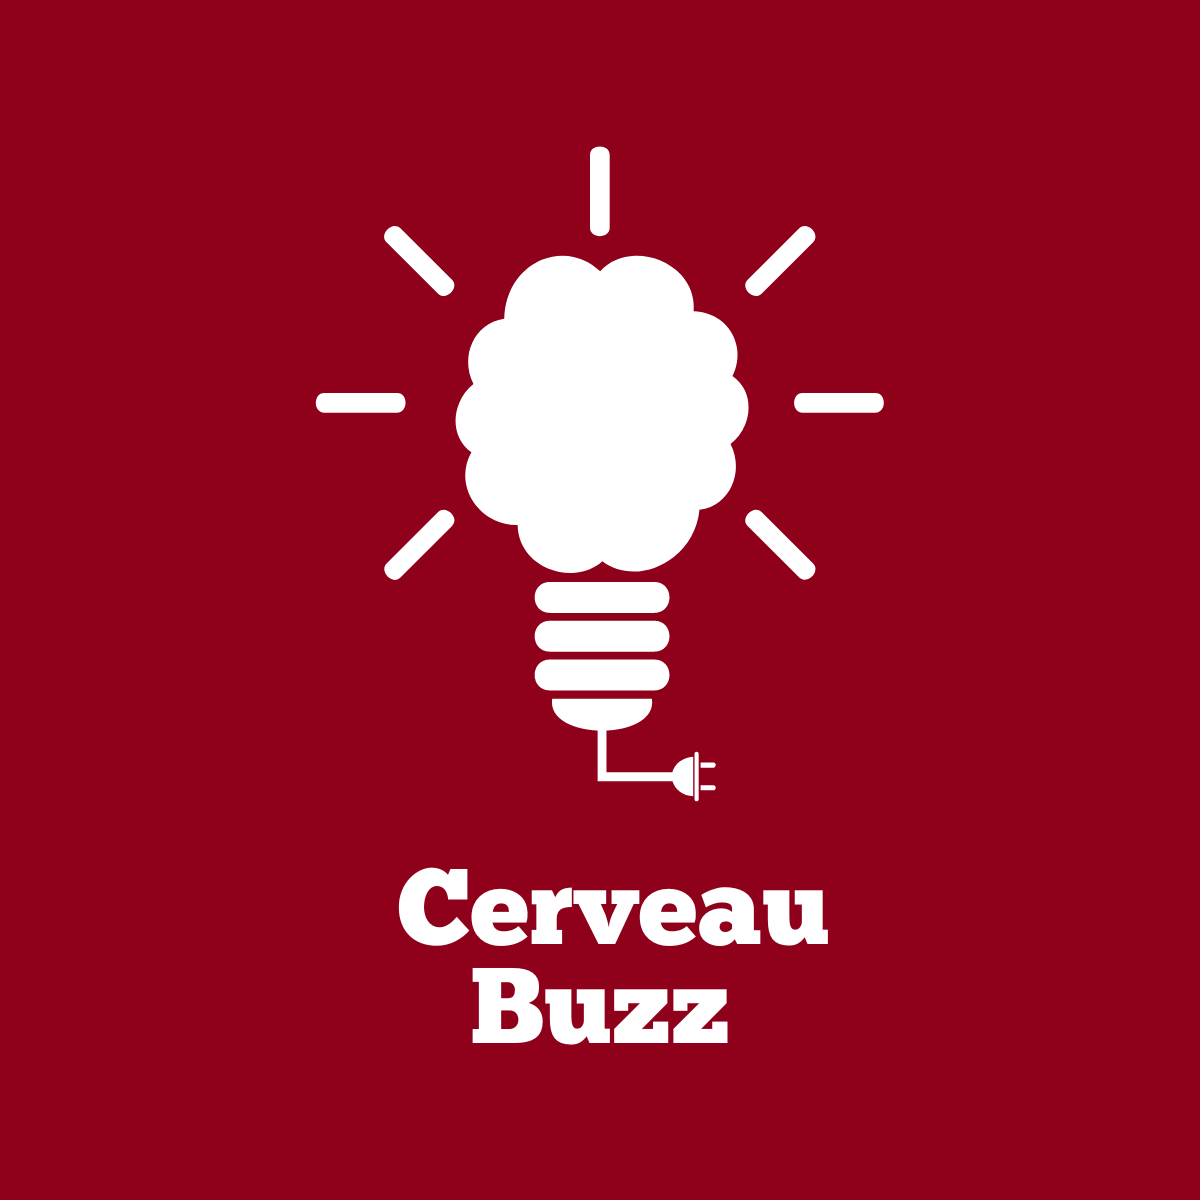 Icône d’ampoule où l’ampoule a l’apparence d’un cerveau et un texte qui se lit comme suit, Cerveau Buzz.